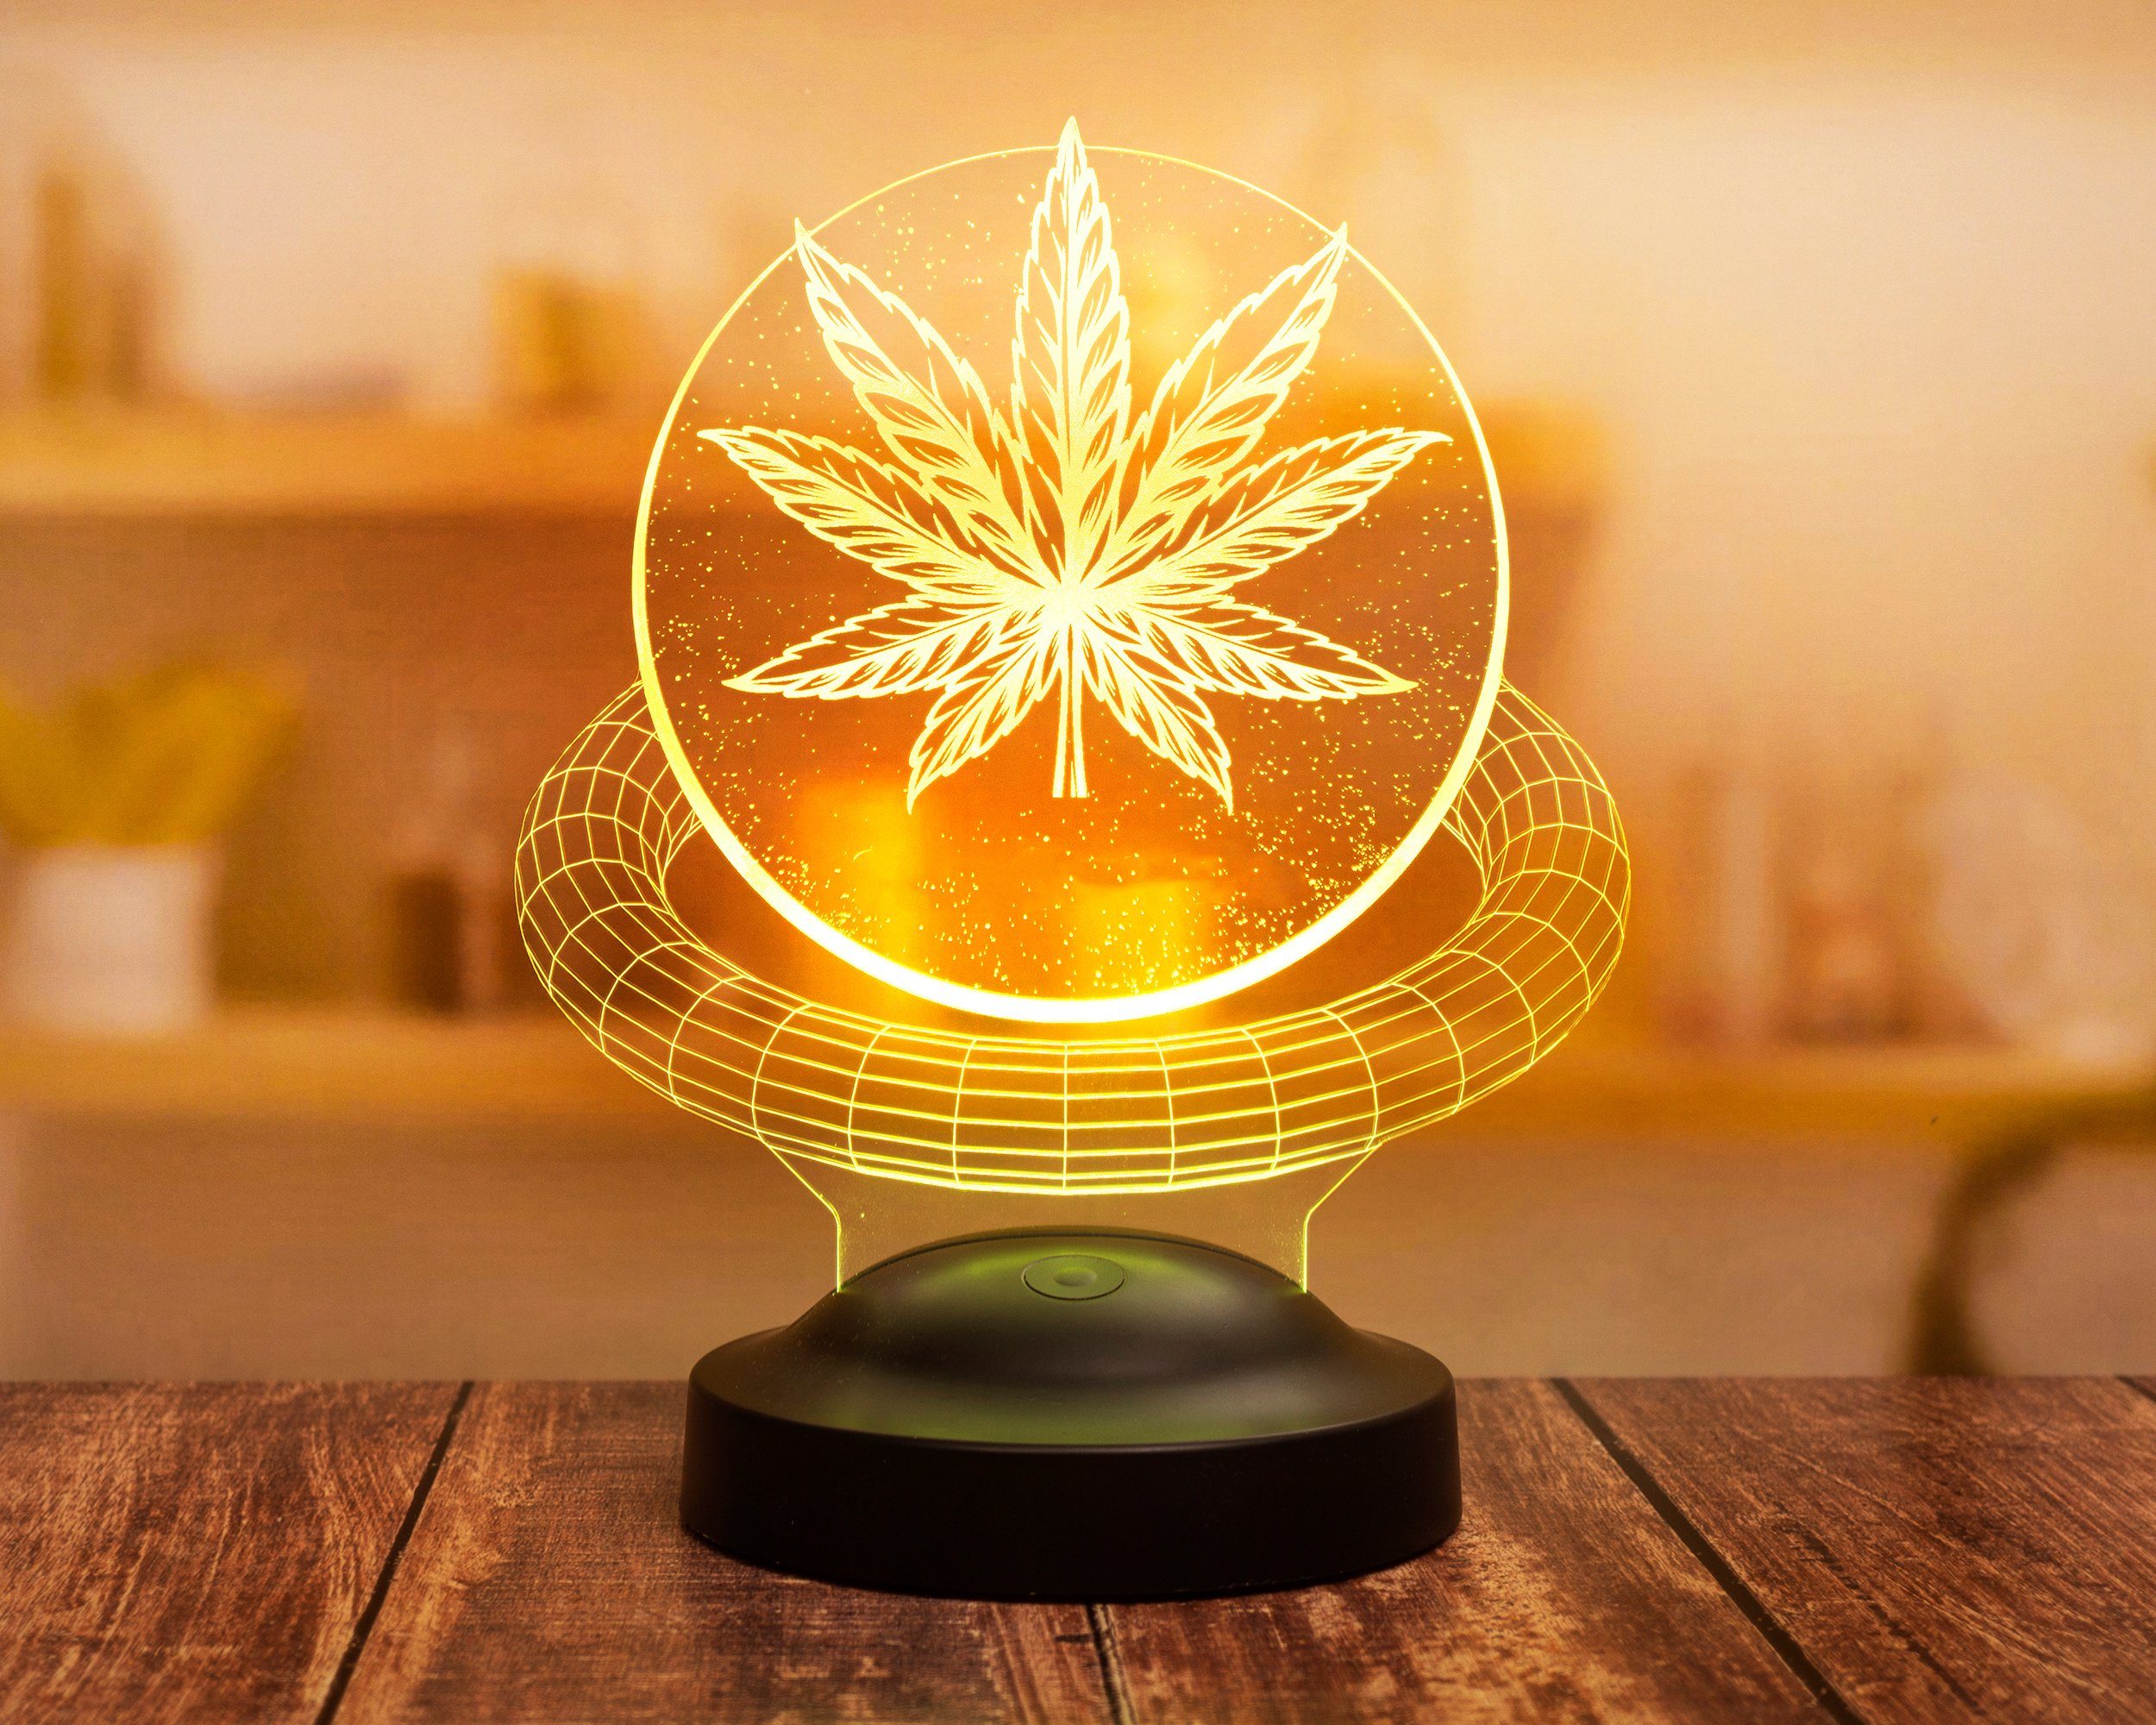 integriert, LED 7 Fans, Cannabis Fans Leuchte Farben Geschenkelampe Cannabis fest Cannabis Nachtlicht für 3D Geschenk Baum Weed Lustiges Nachttischlampe Geschenk,